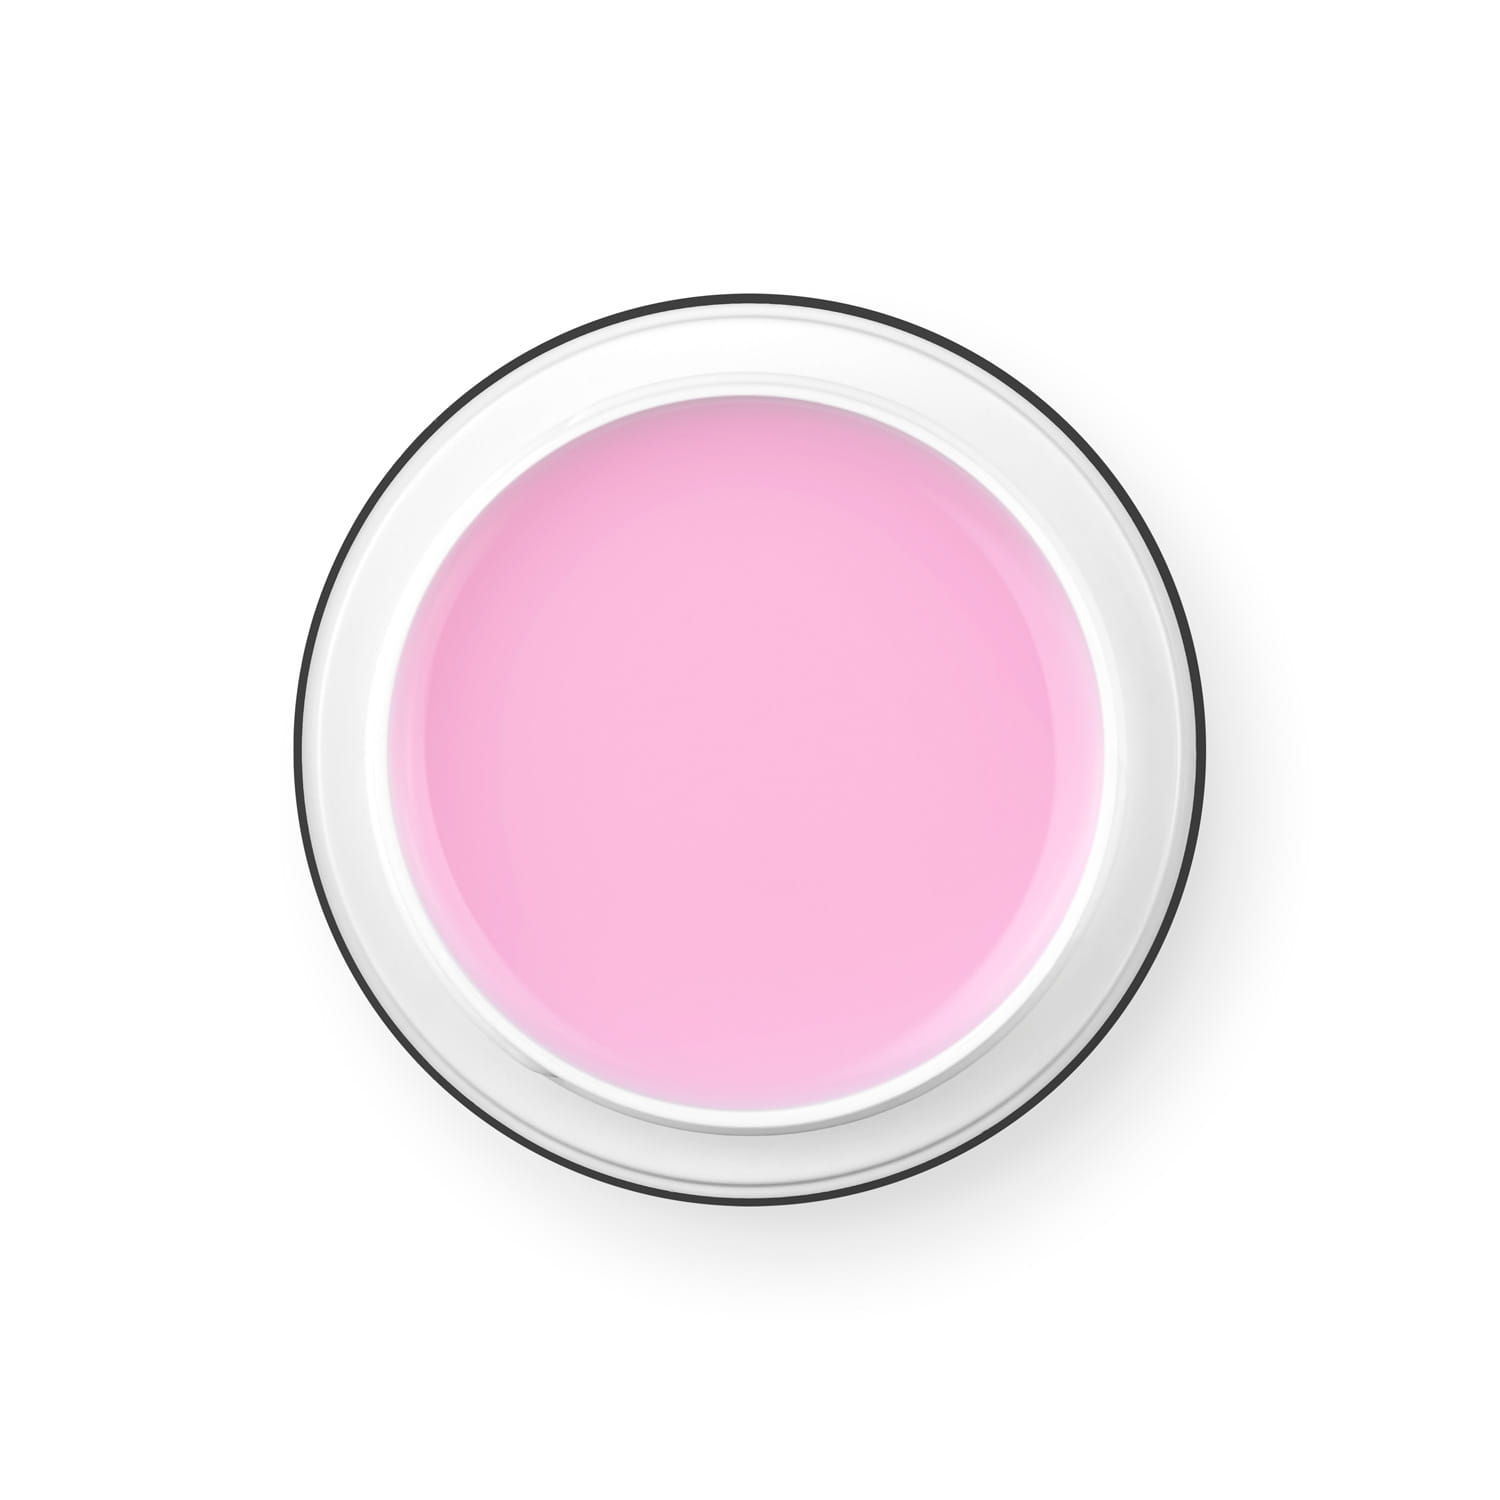 PALU Pro Light Builder építőzselé 90g - Soft Pink